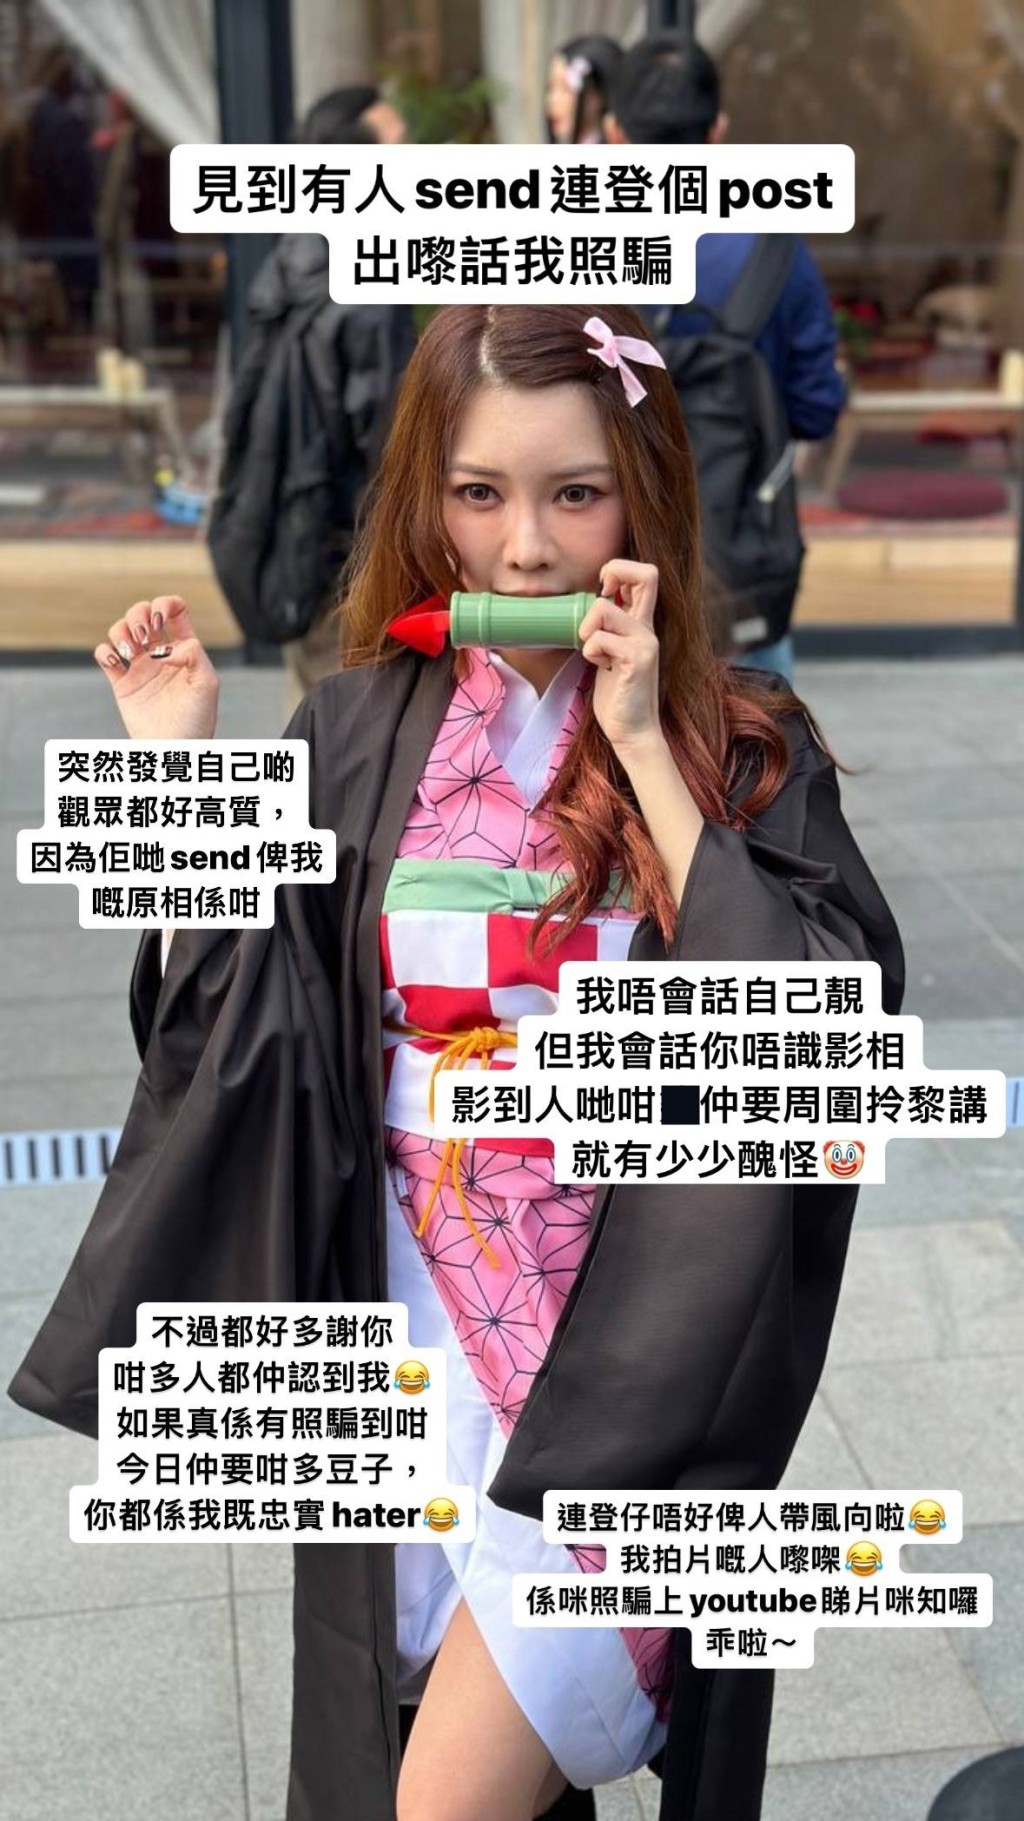 趙詠瑤轉發網民的照片回應。